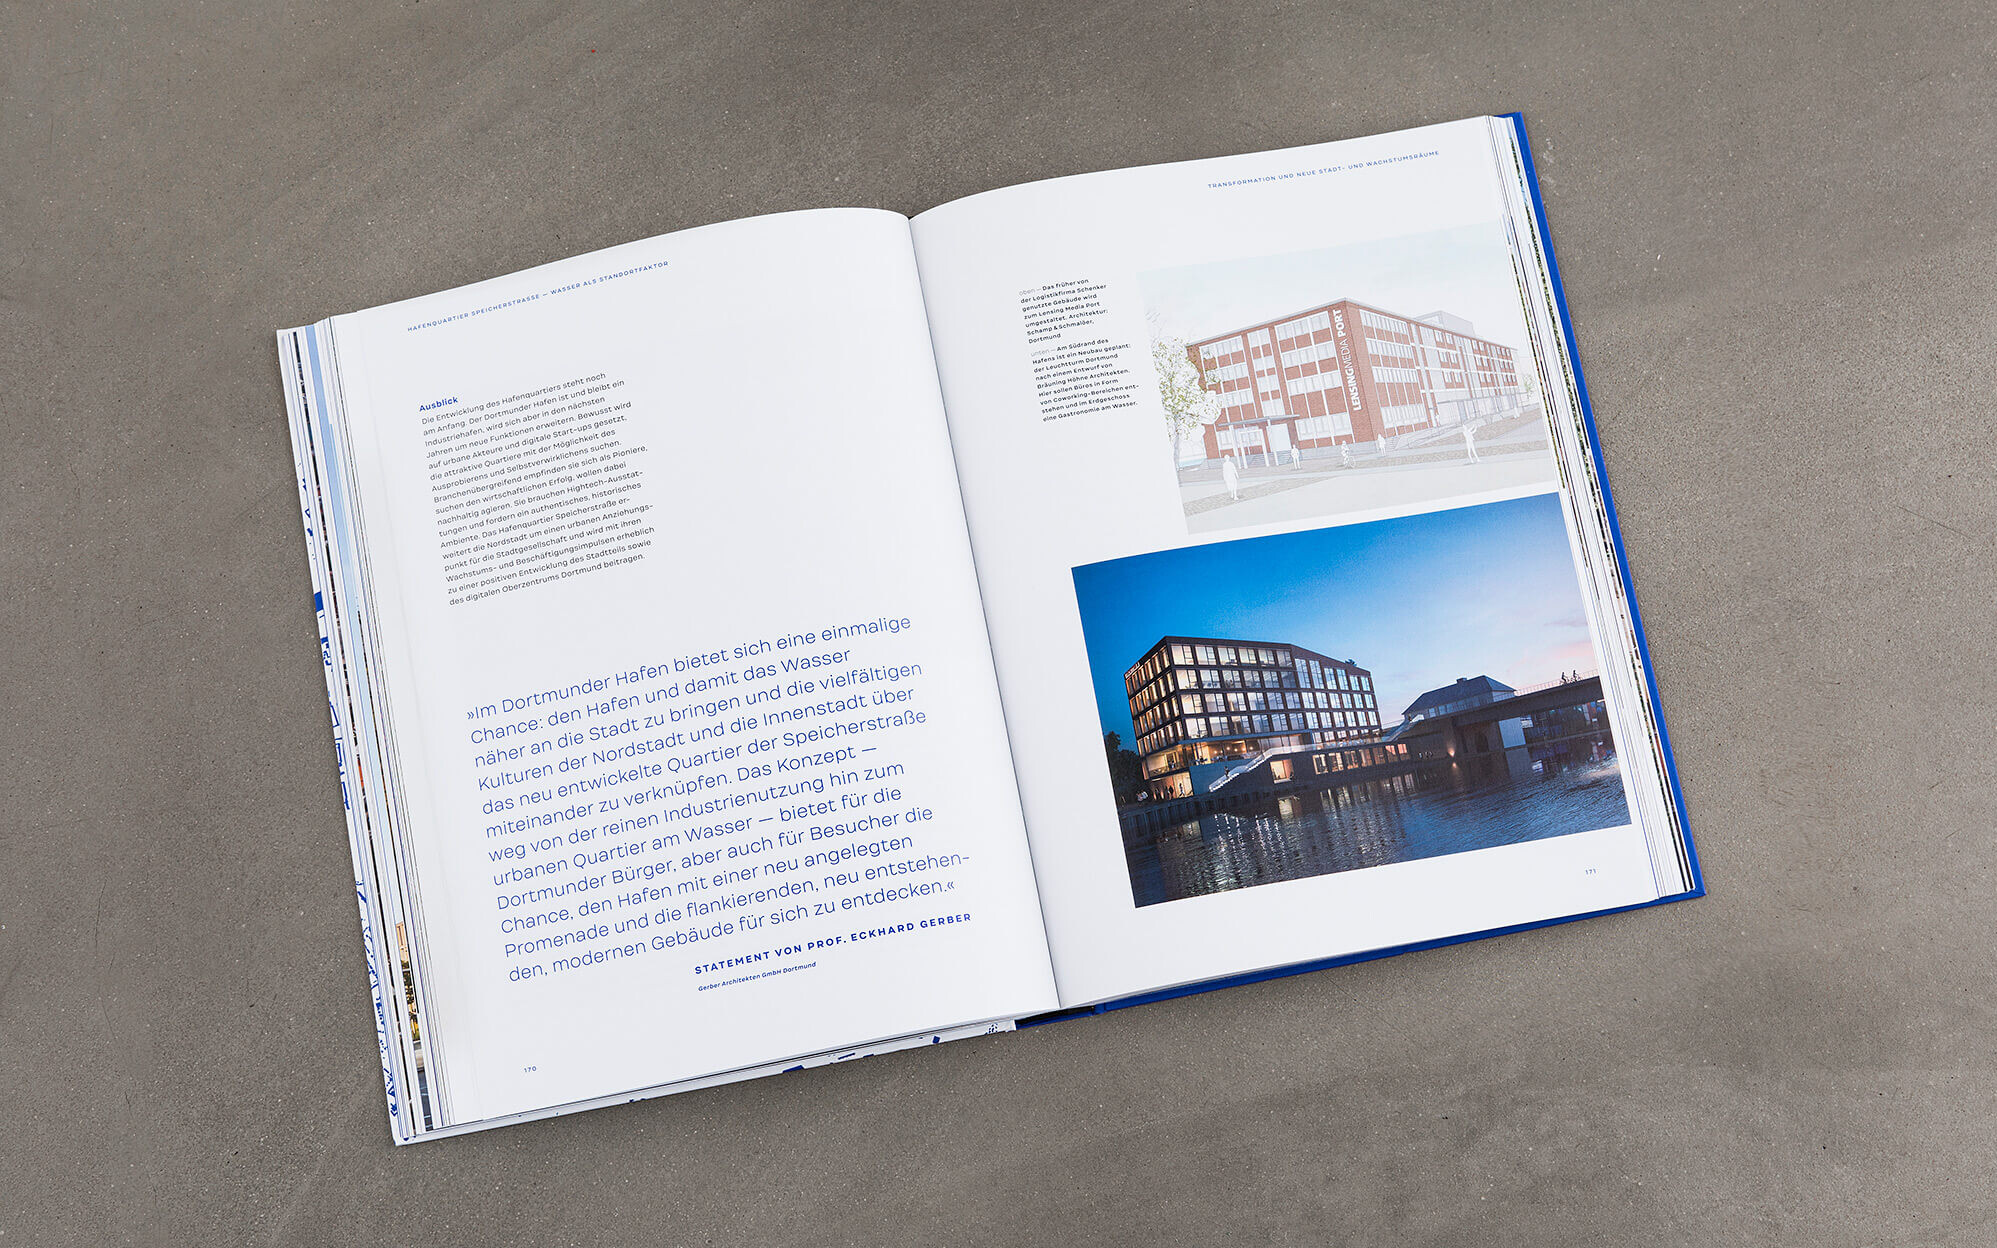 Doppelseite im Editorial Design für das Buch Dortmund bauen